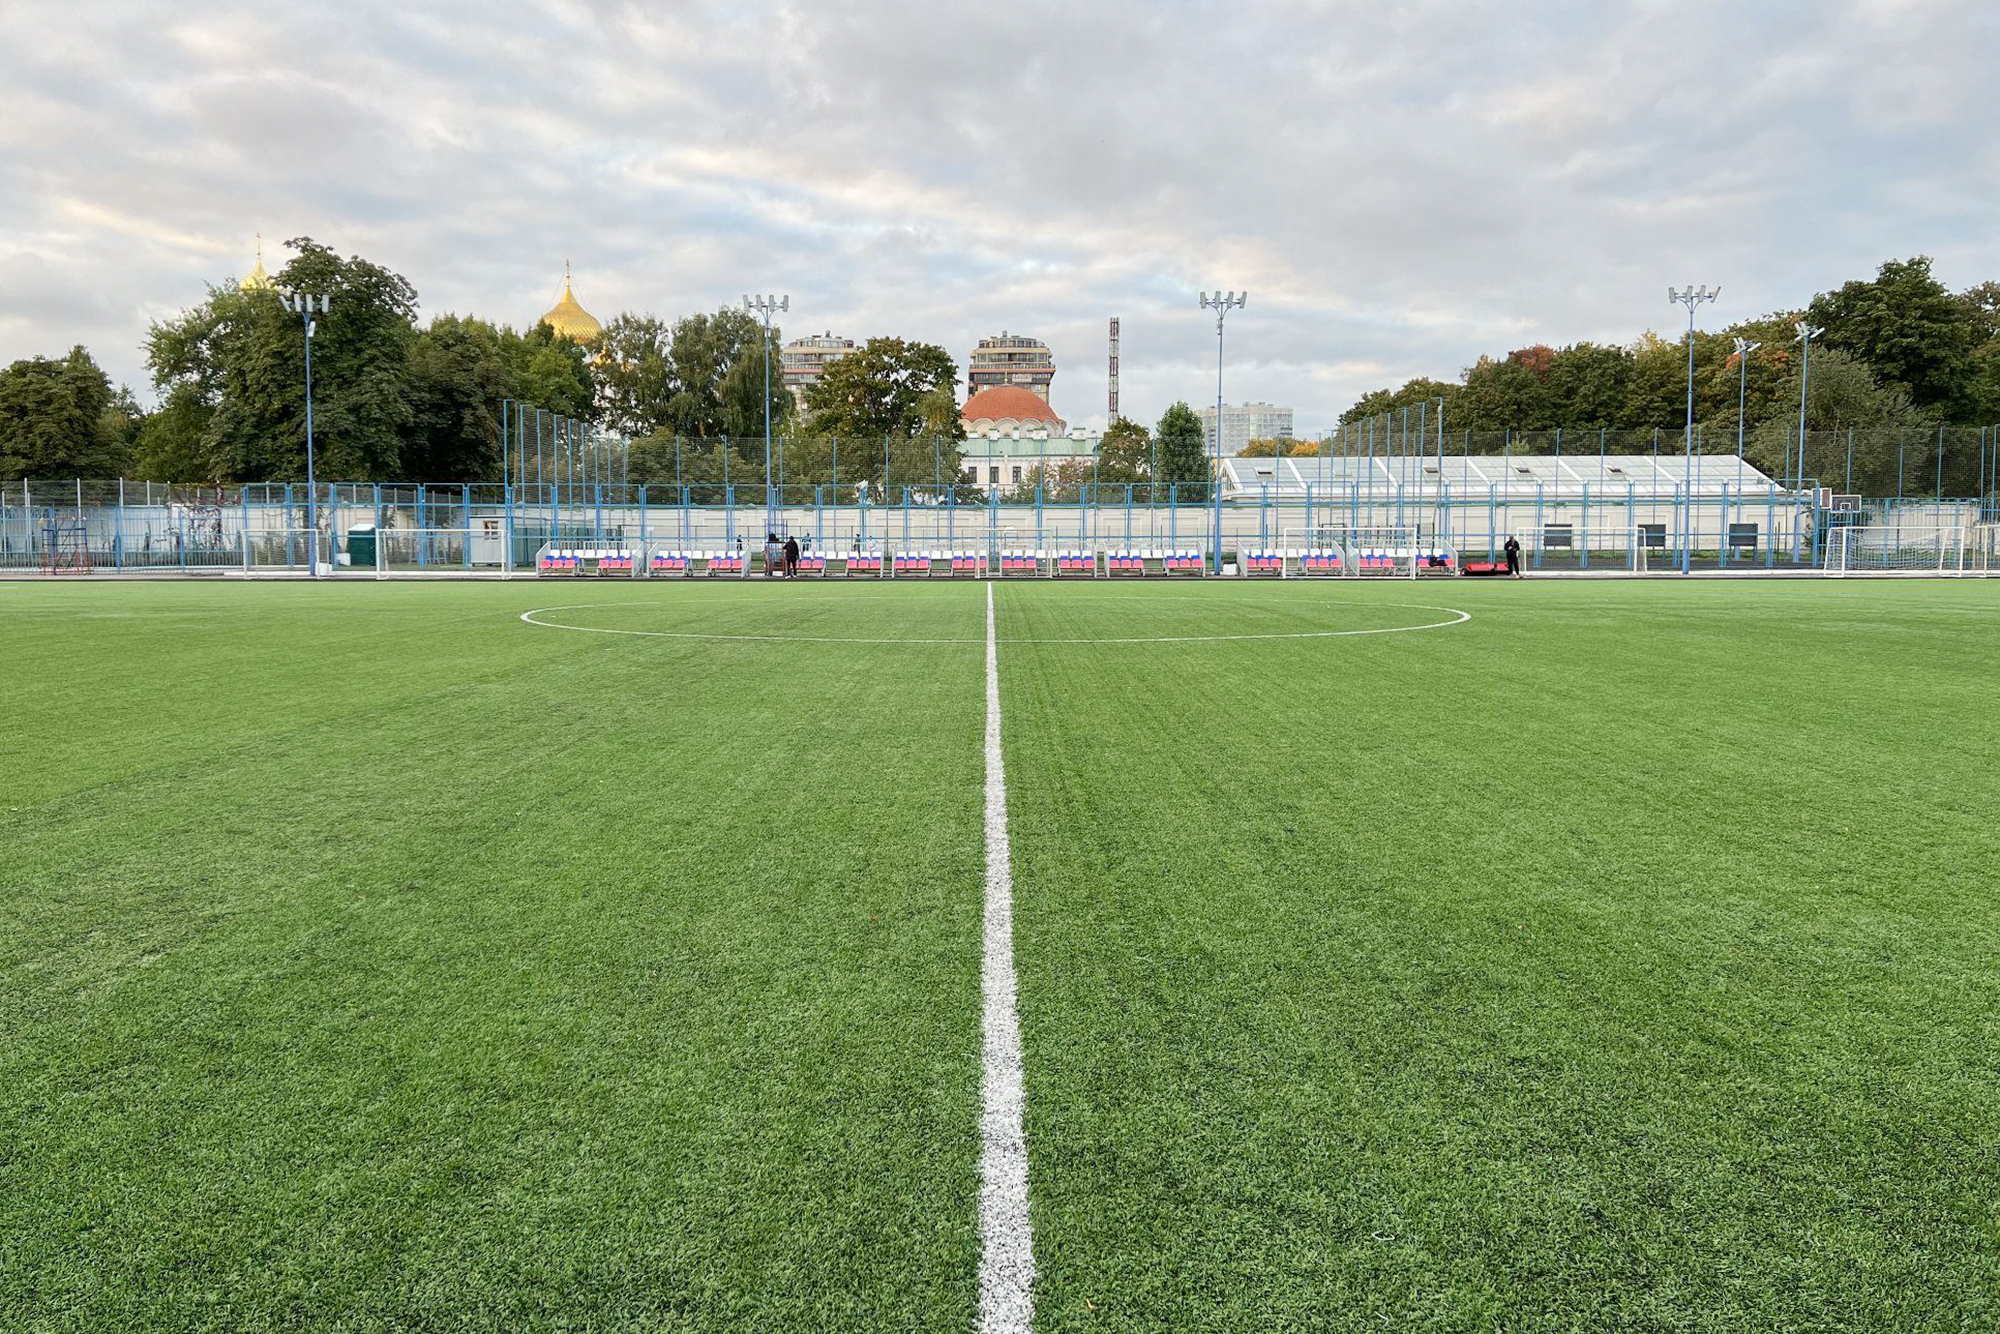 Так выглядит стадион «Скороход» в Московском районе Санкт-Петербурга, на котором тренируются и играют молодежные команды